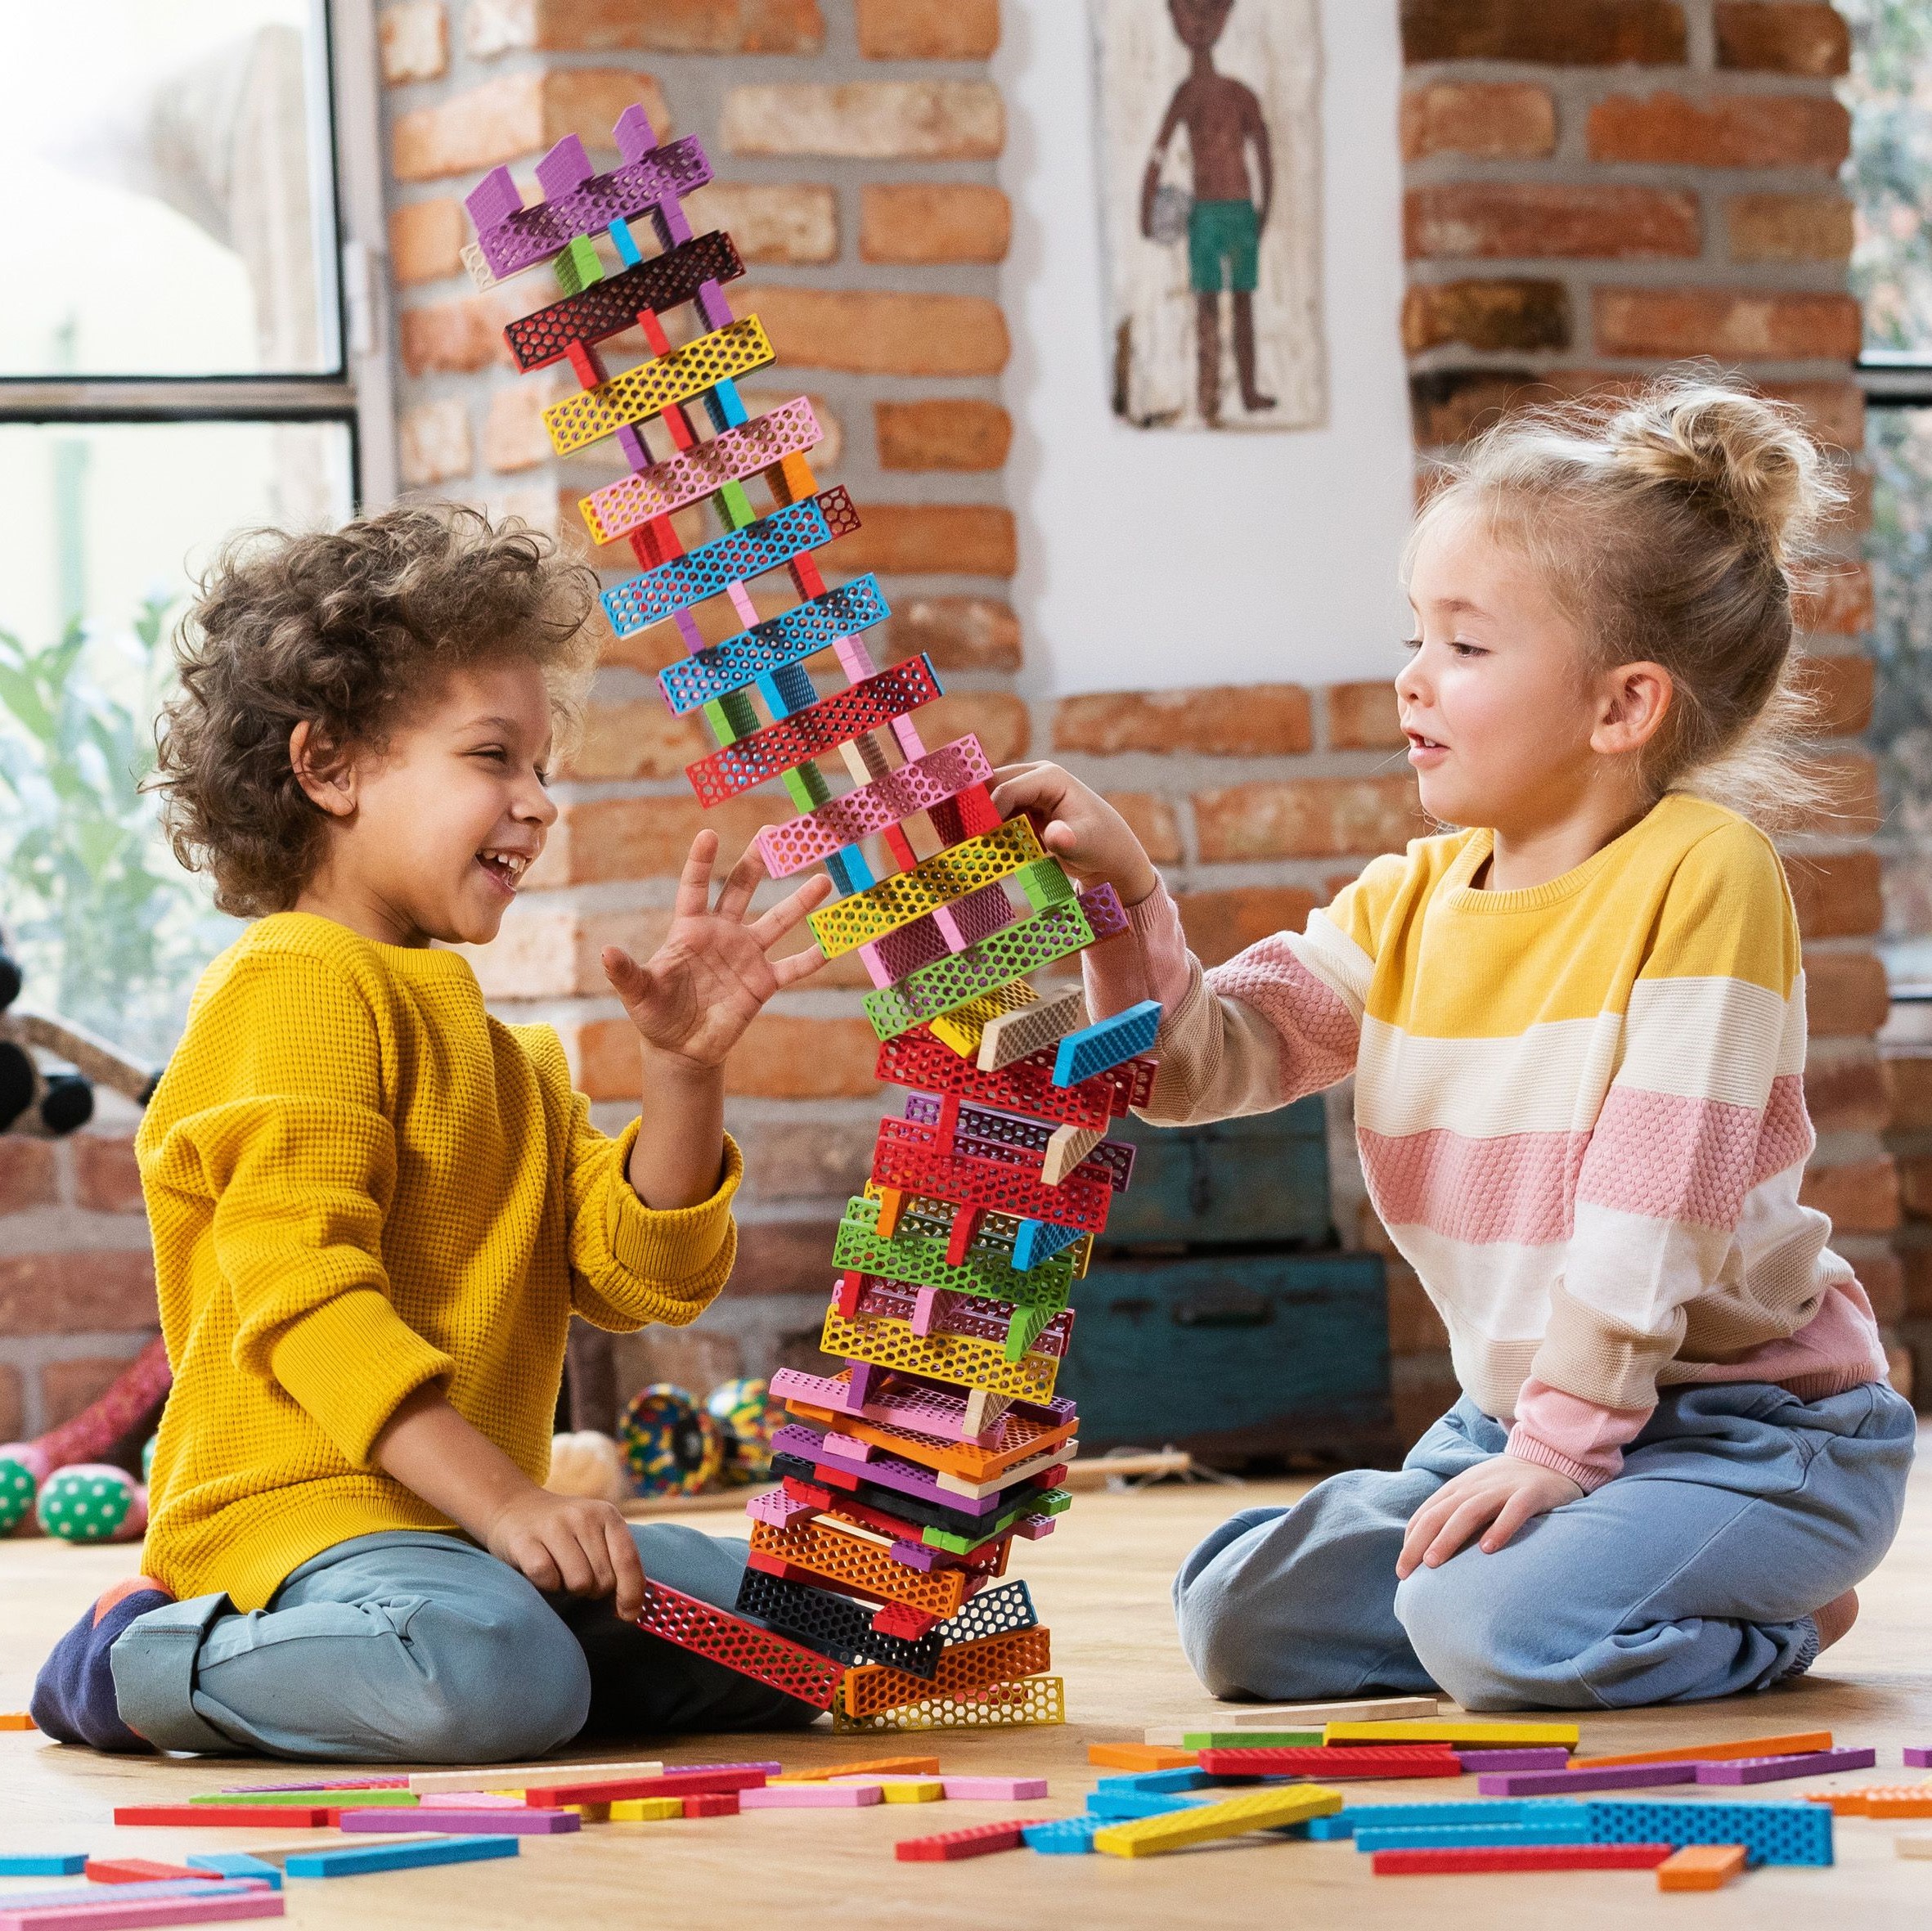 Bild von zwei Kindern welche einen Turm aus Bioblo Bausteinen gebaut haben